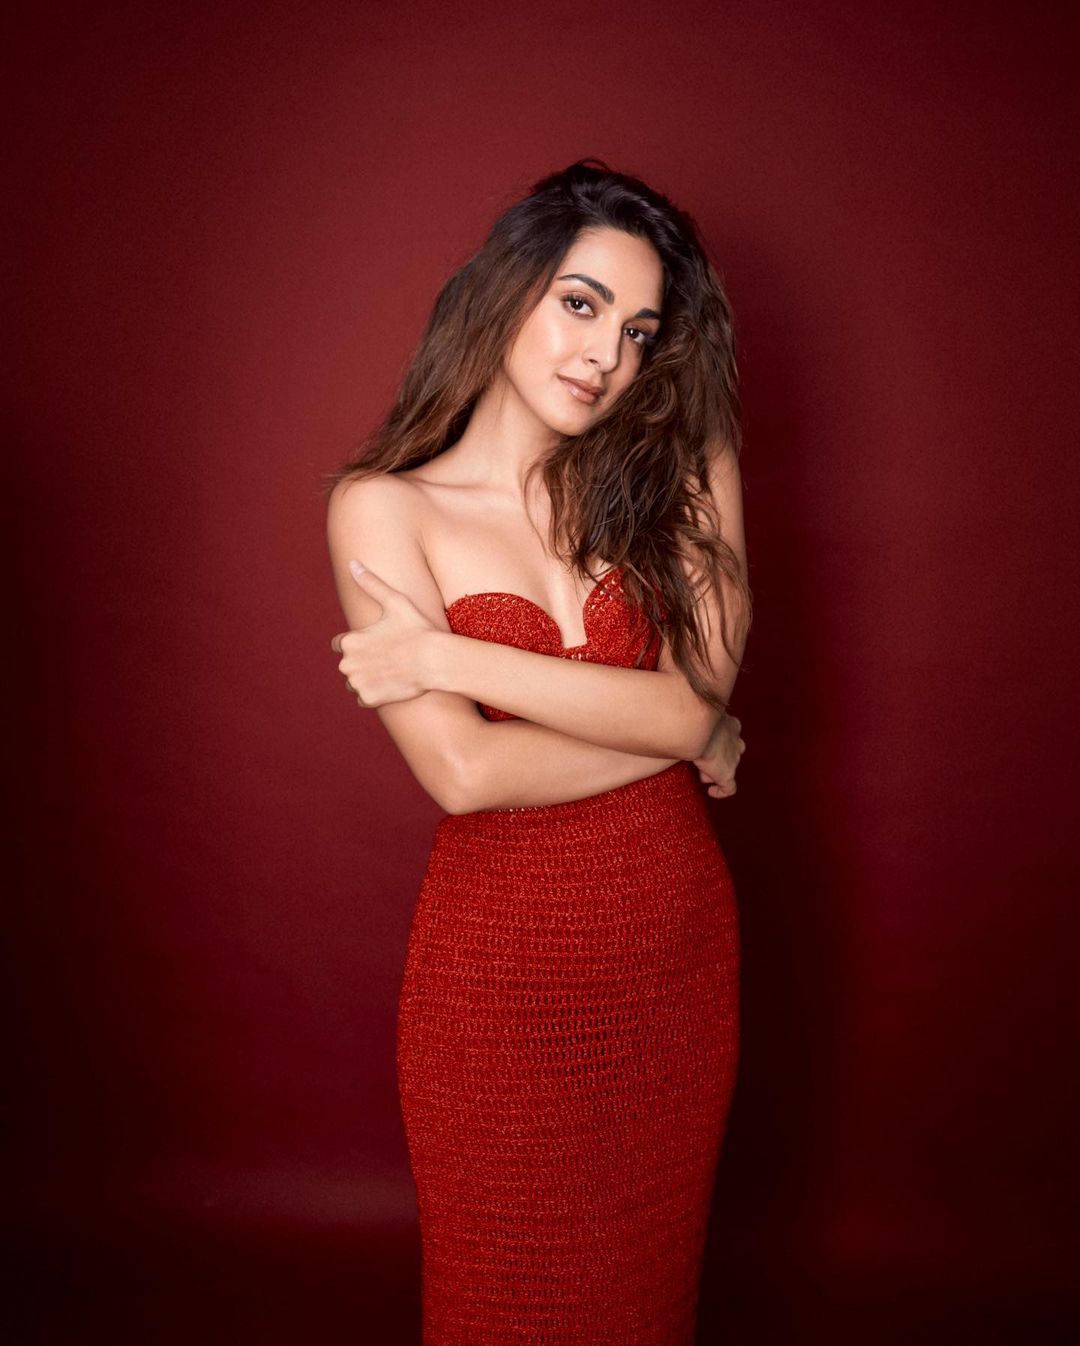 kiara-advani-hot-looks-in-amazing-red-dress